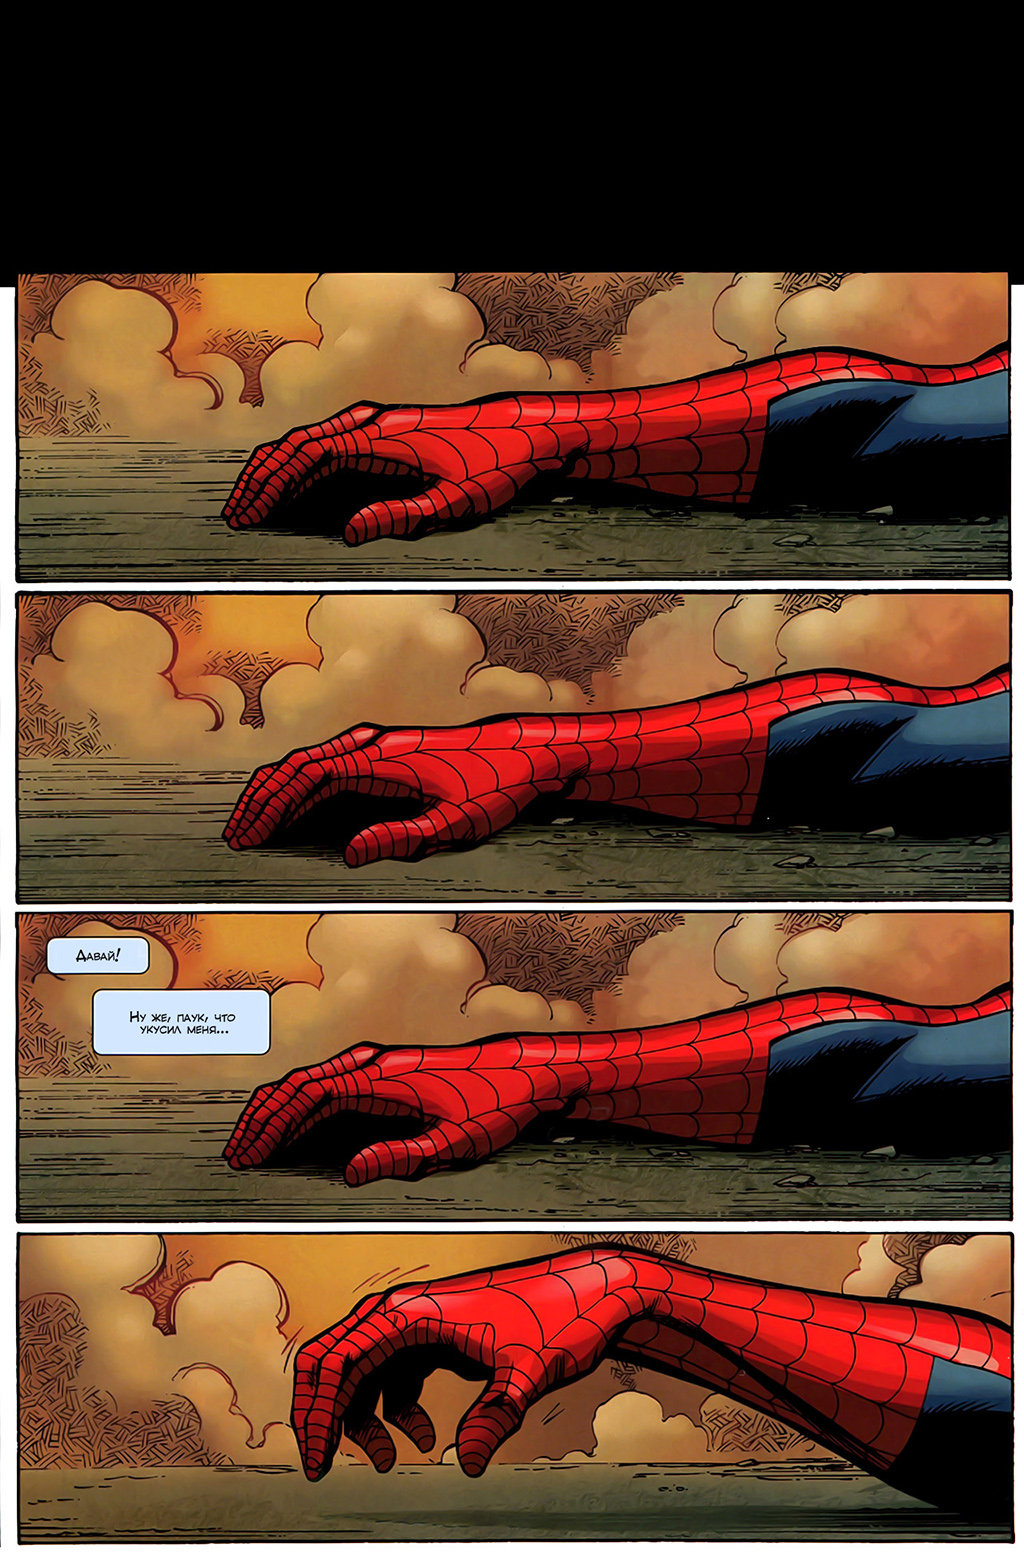 Ultimate Spider-man Питер Паркер смерть. Питер Паркер в комиксах укус паука. Комиксы человек паук ультимейт смерть. Ultimate Spider man грустный комикс. Человек паук комикс 18